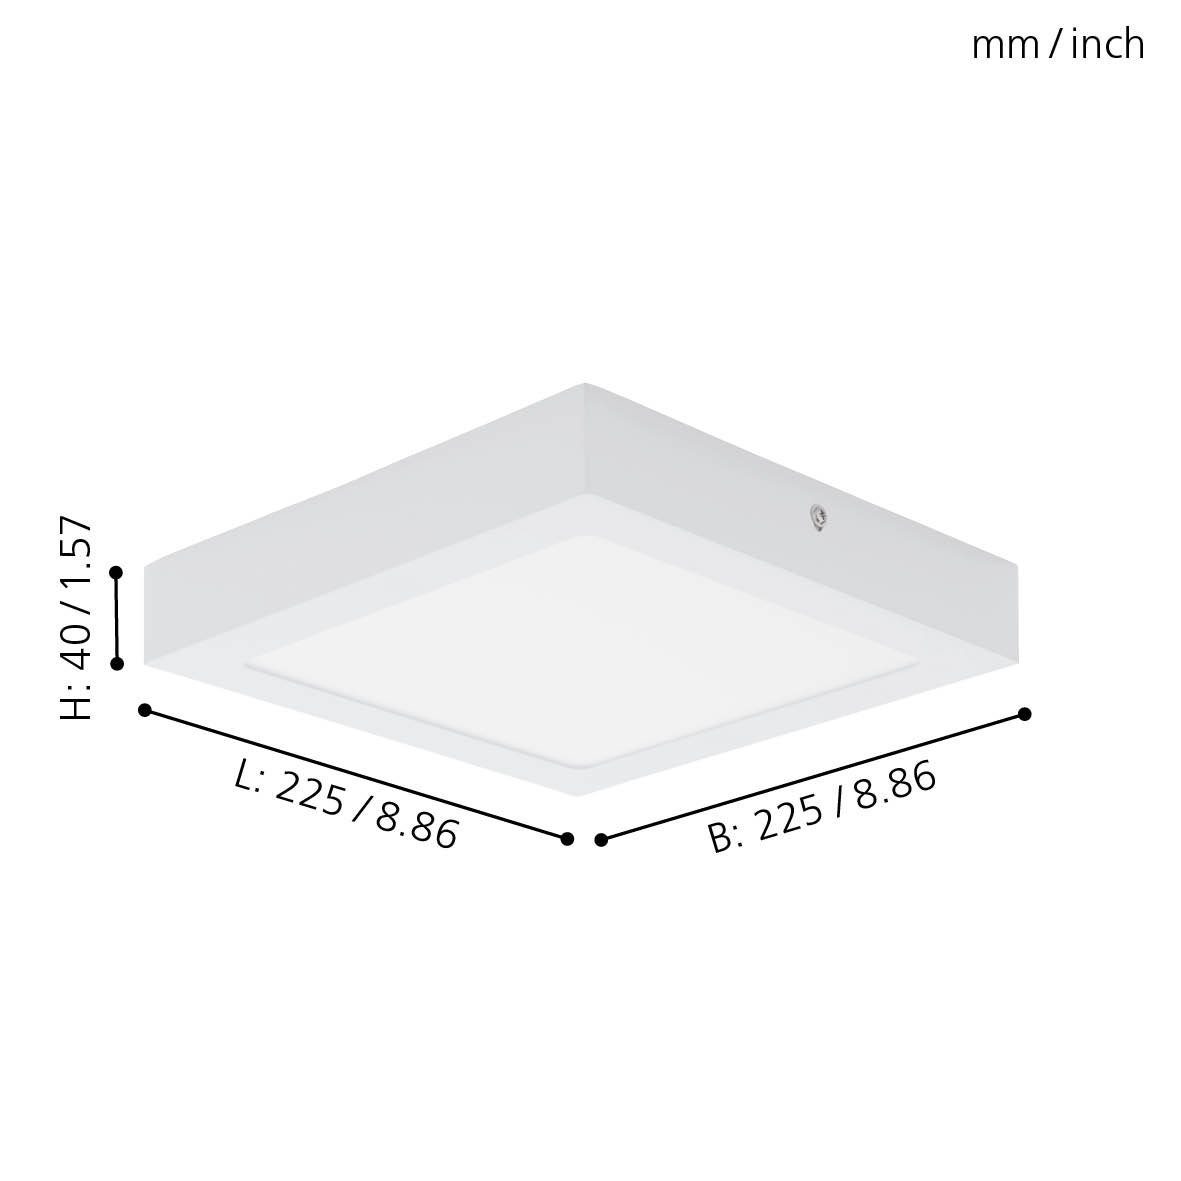 EGLO Aufbauleuchte Fueva Leuchtmittel 22.5 1, warmweiß, Deckenlampe cm, weiß, Lampe Deckenleuchte, inklusive